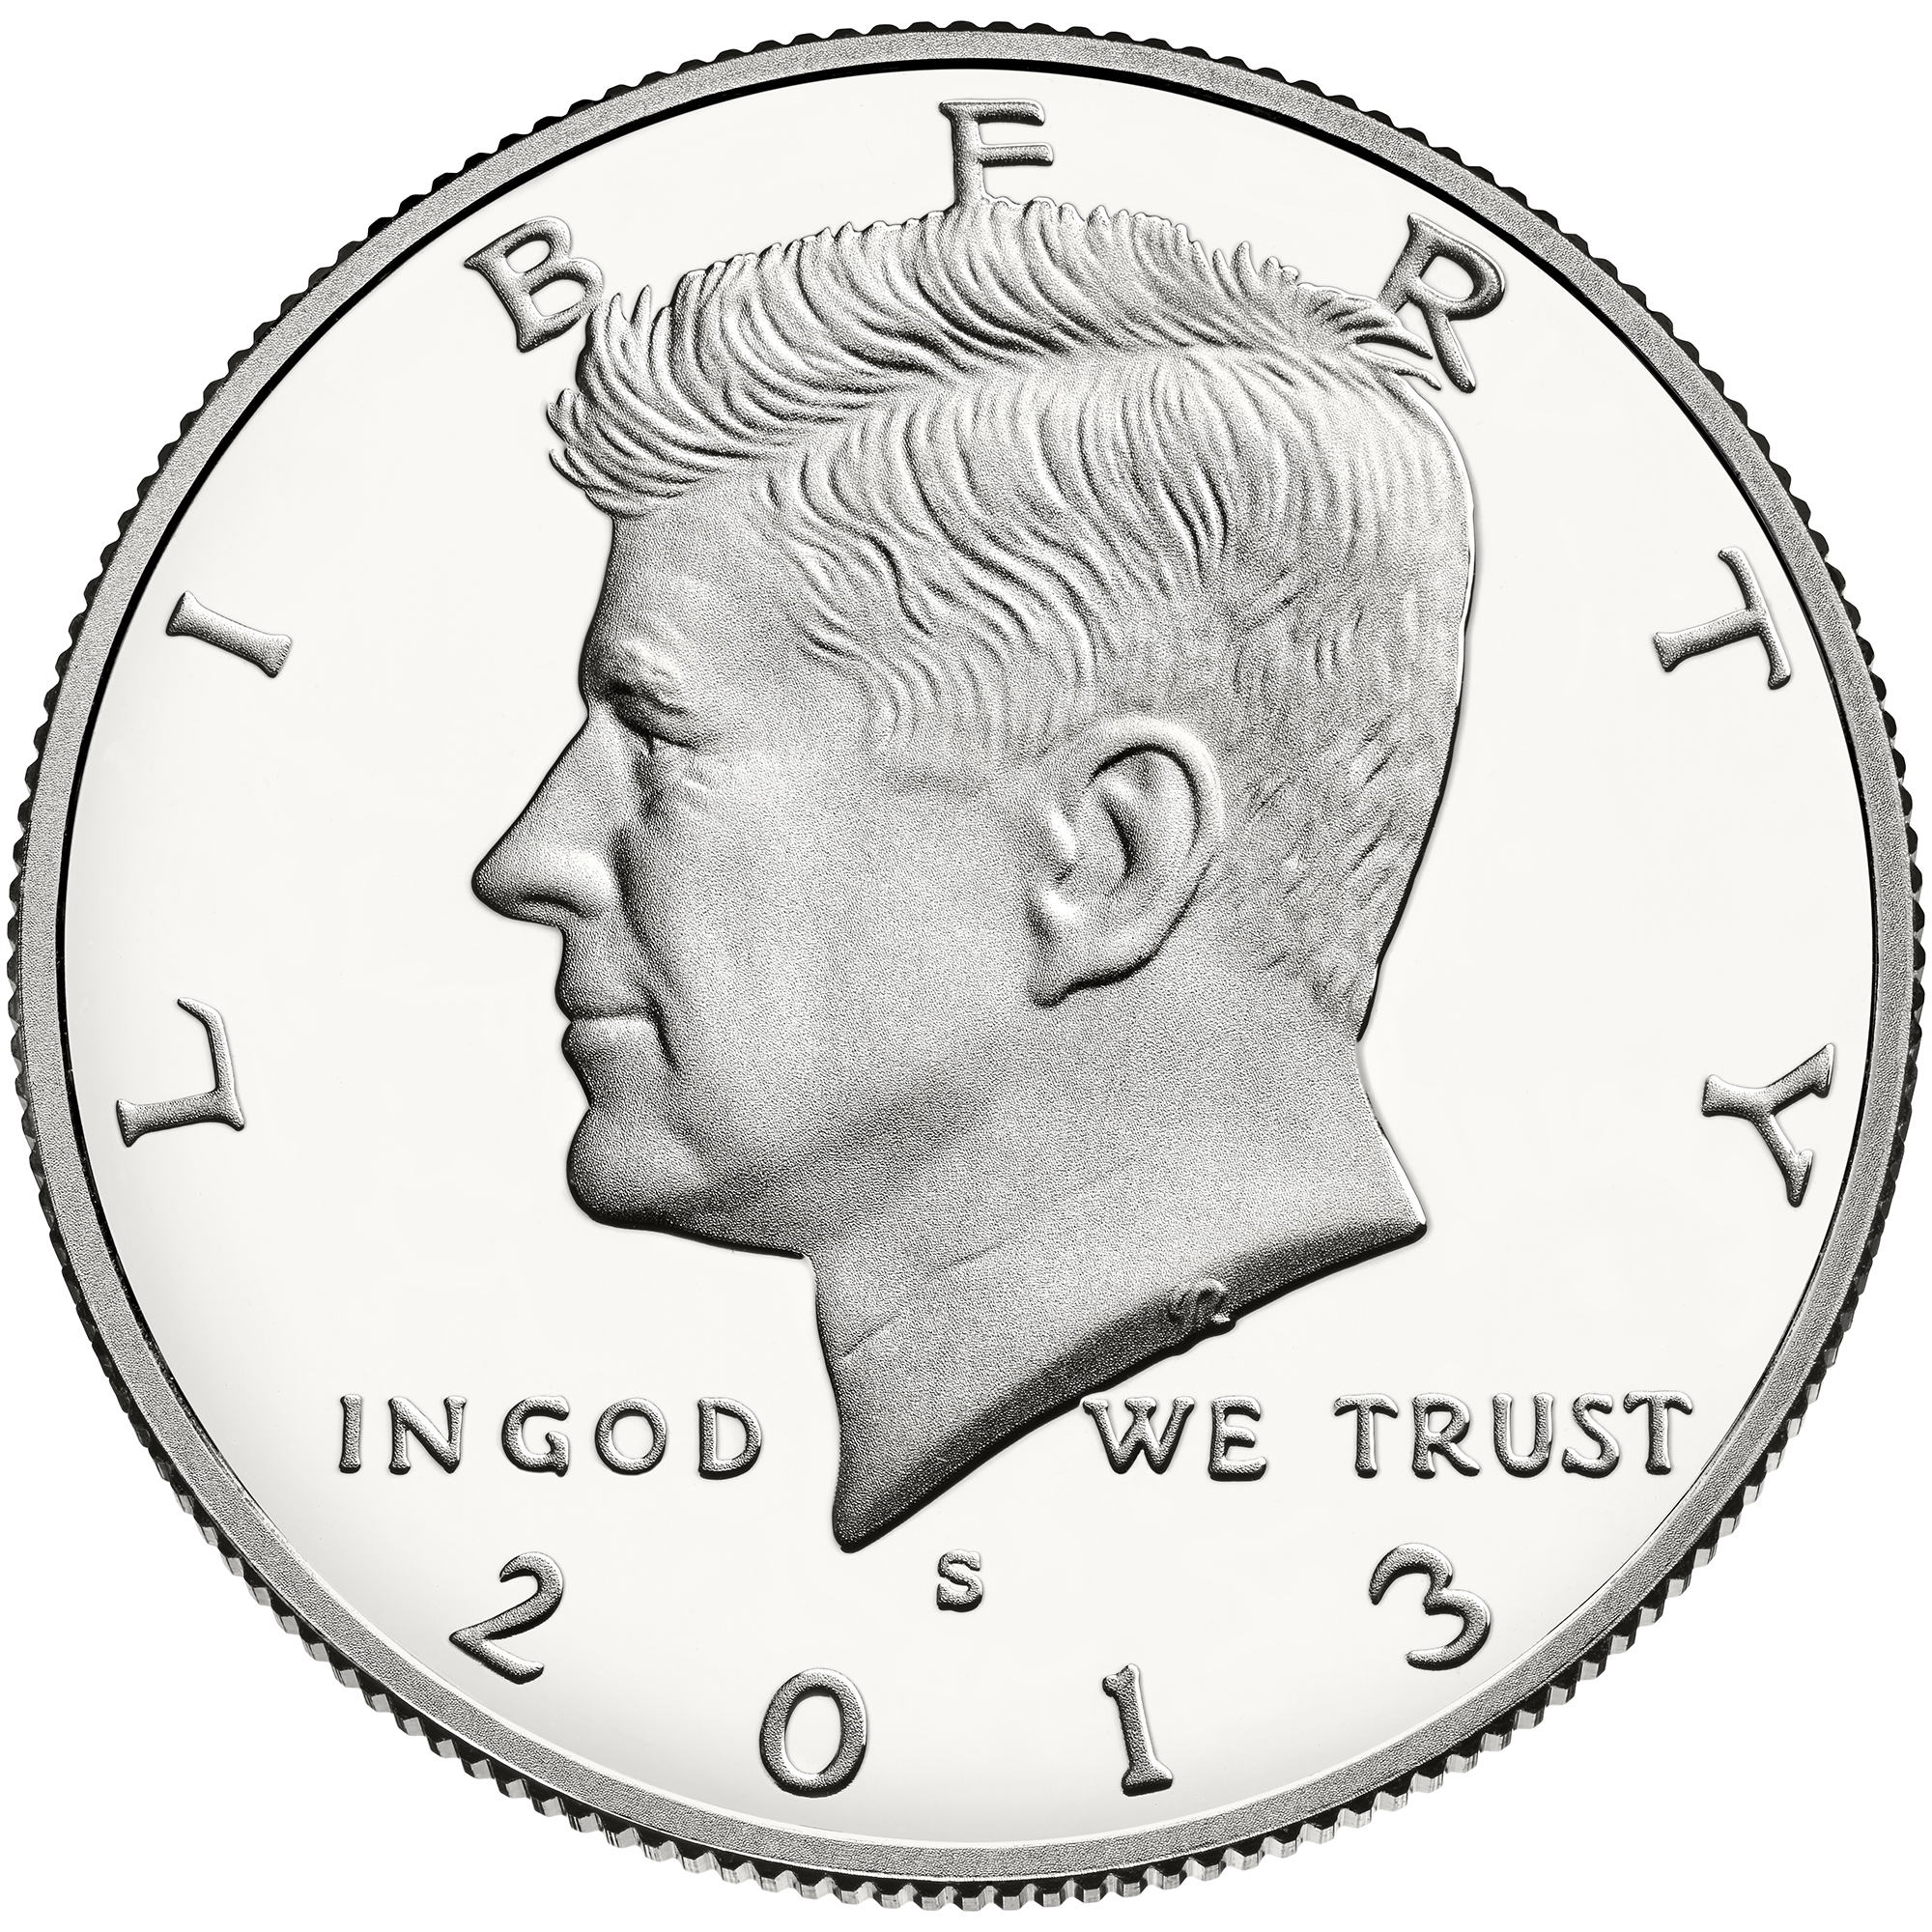 US 1/2 Dollar - Half Dollar 1987 S